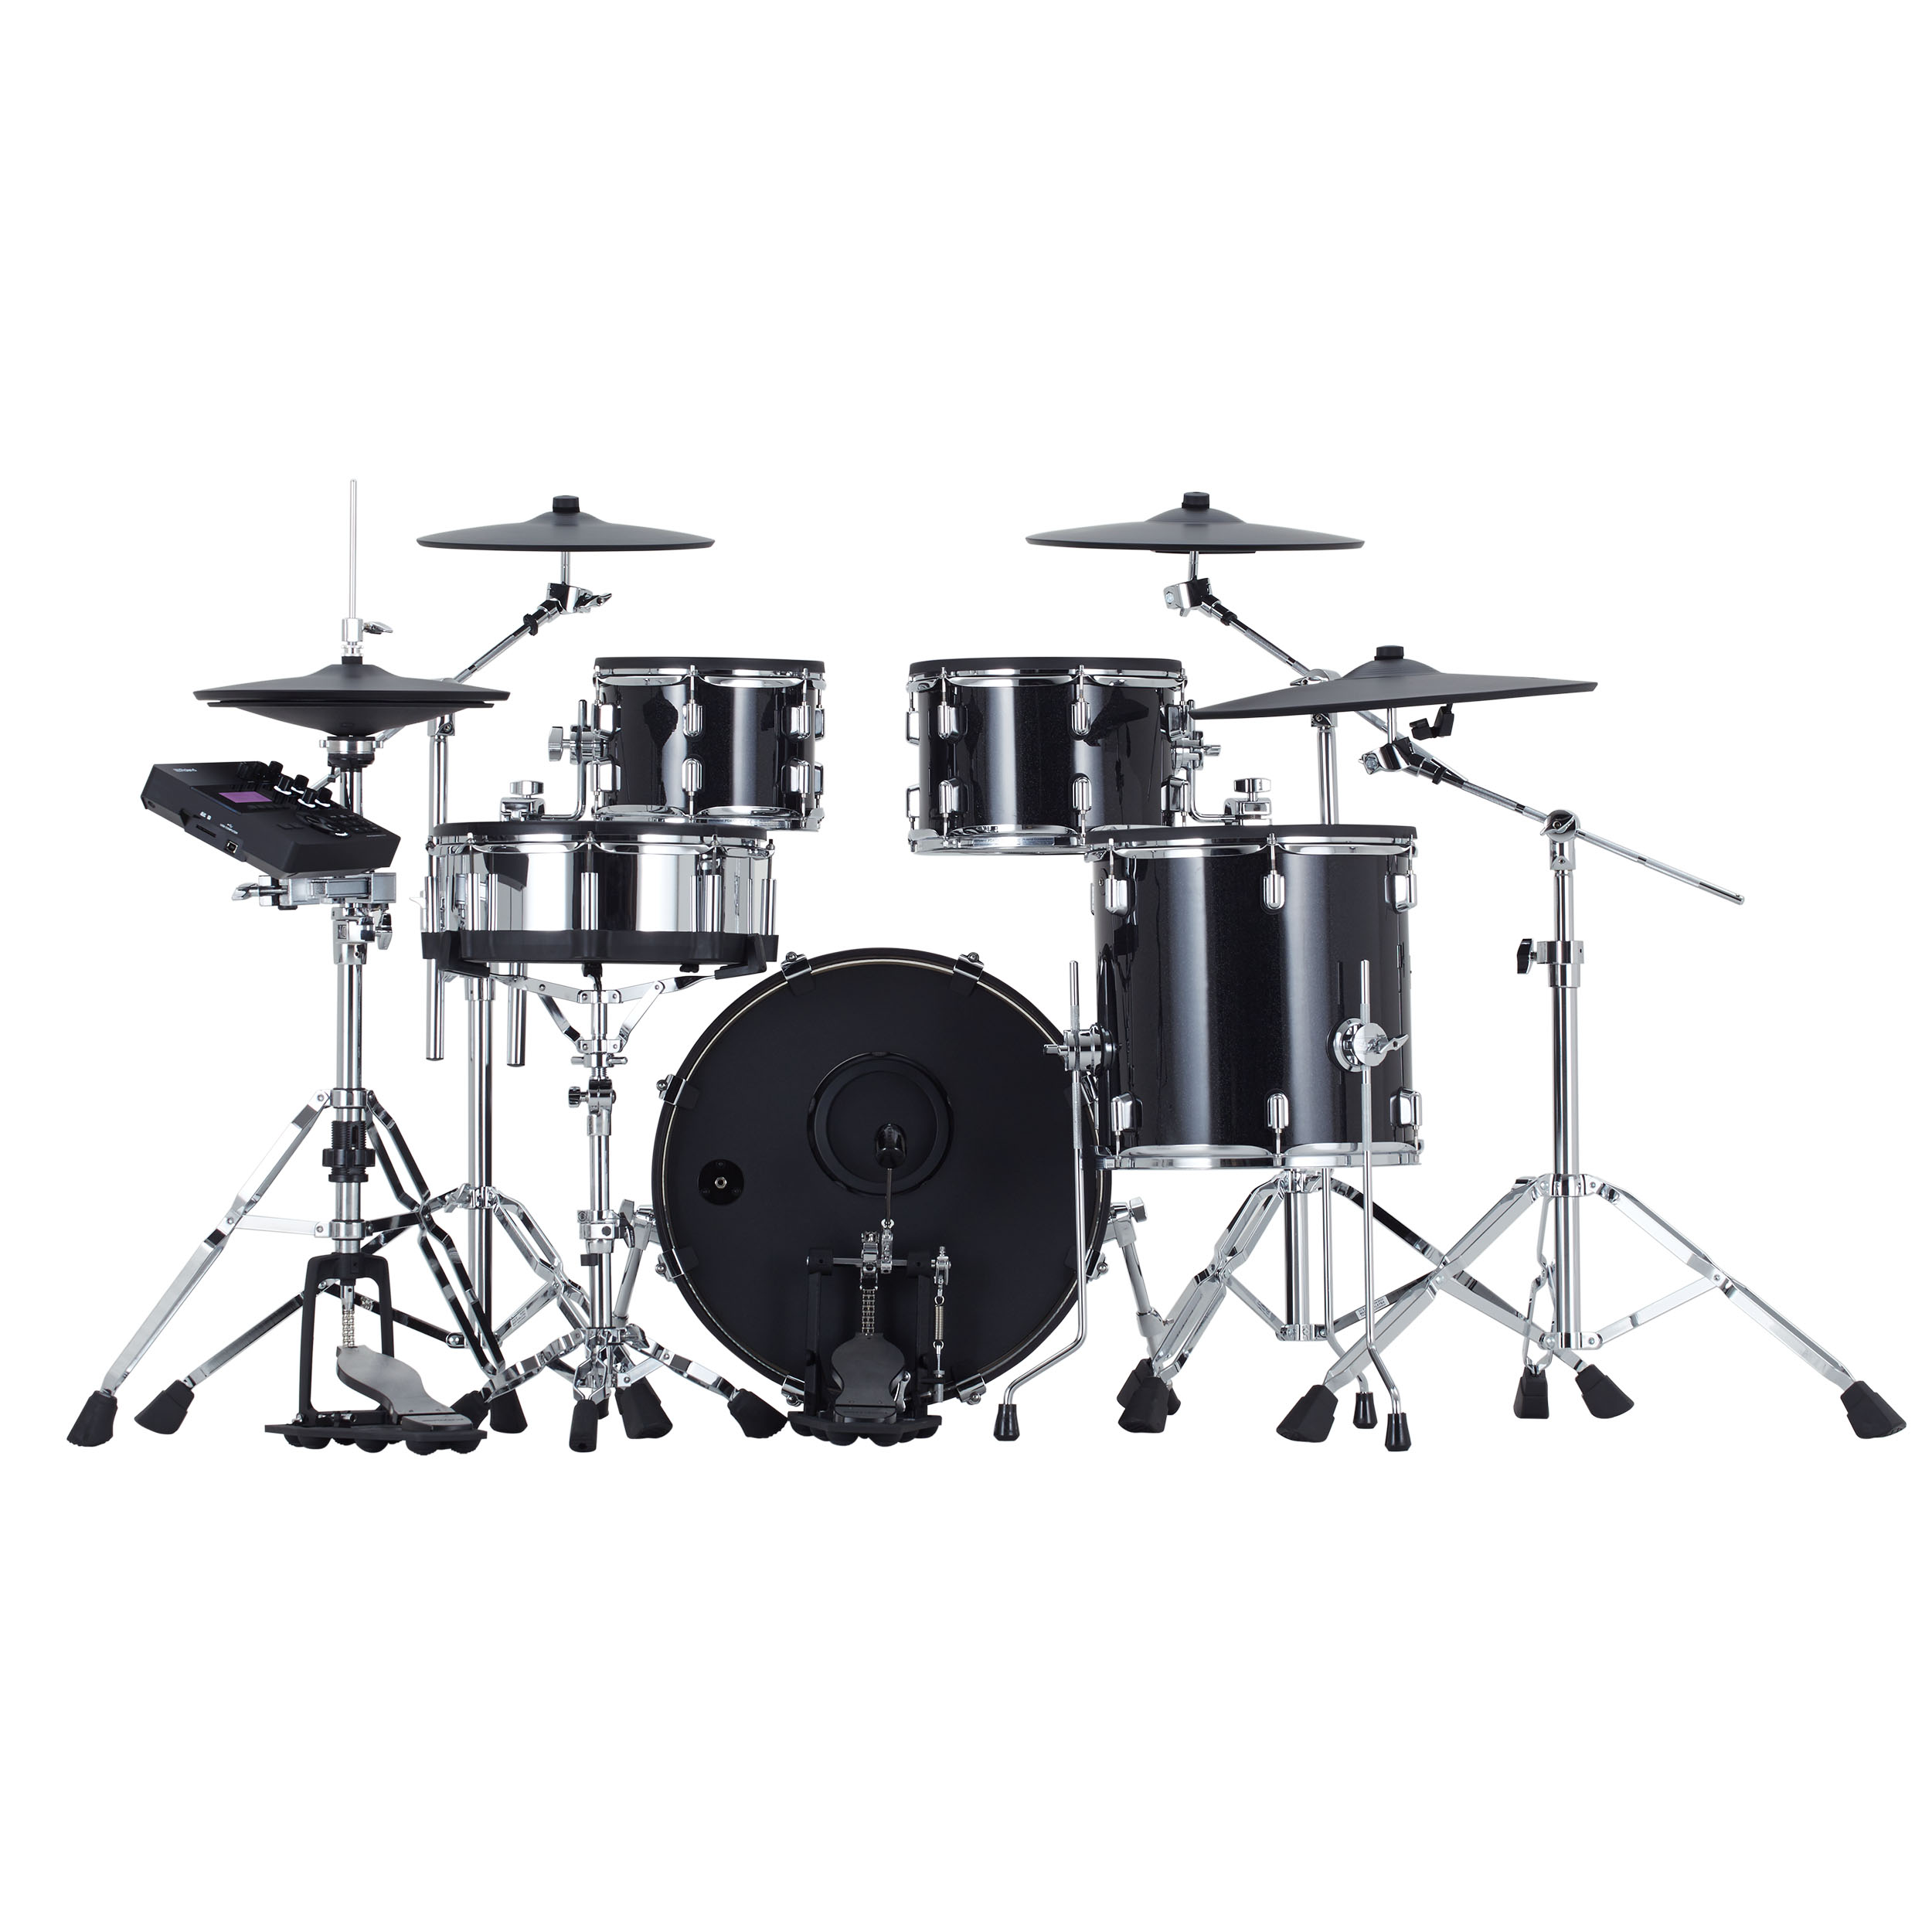 Roland Vad 507 V-drums Acoustic Design 5 Futs - Batería electrónica completa - Variation 1